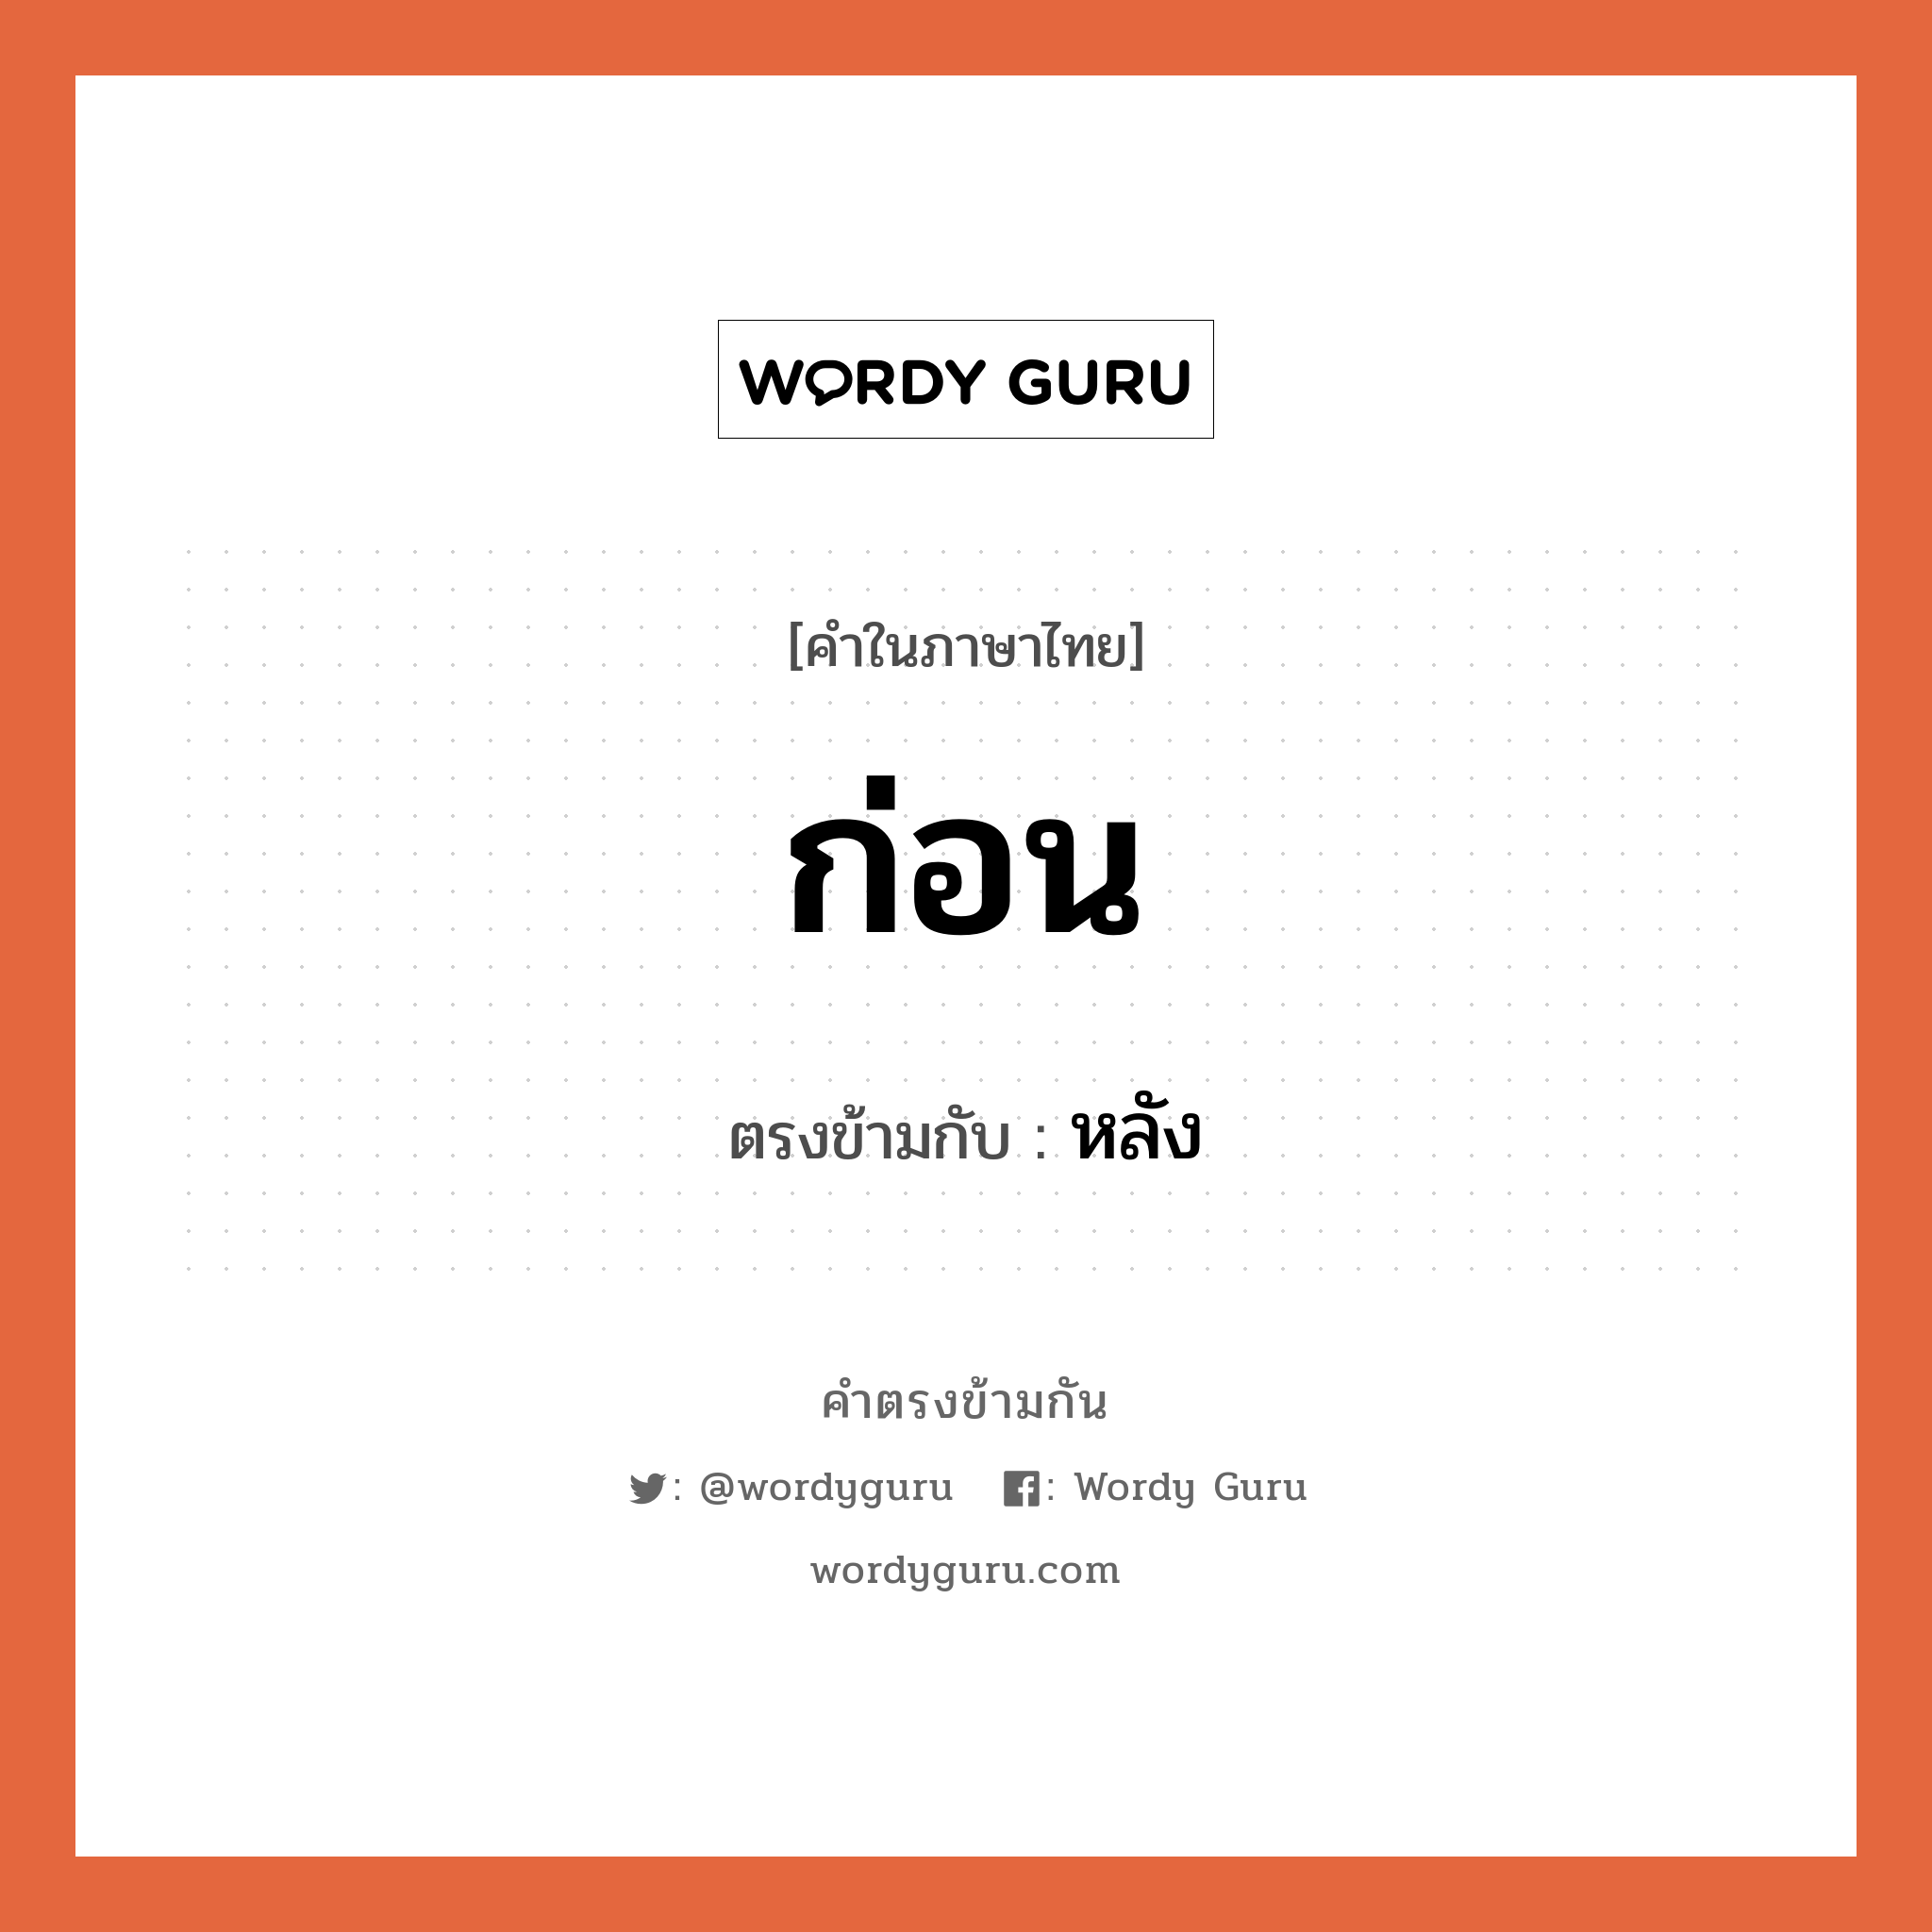 ก่อน เป็นคำตรงข้ามกับคำไหนบ้าง?, คำในภาษาไทย ก่อน ตรงข้ามกับ หลัง หมวด หลัง